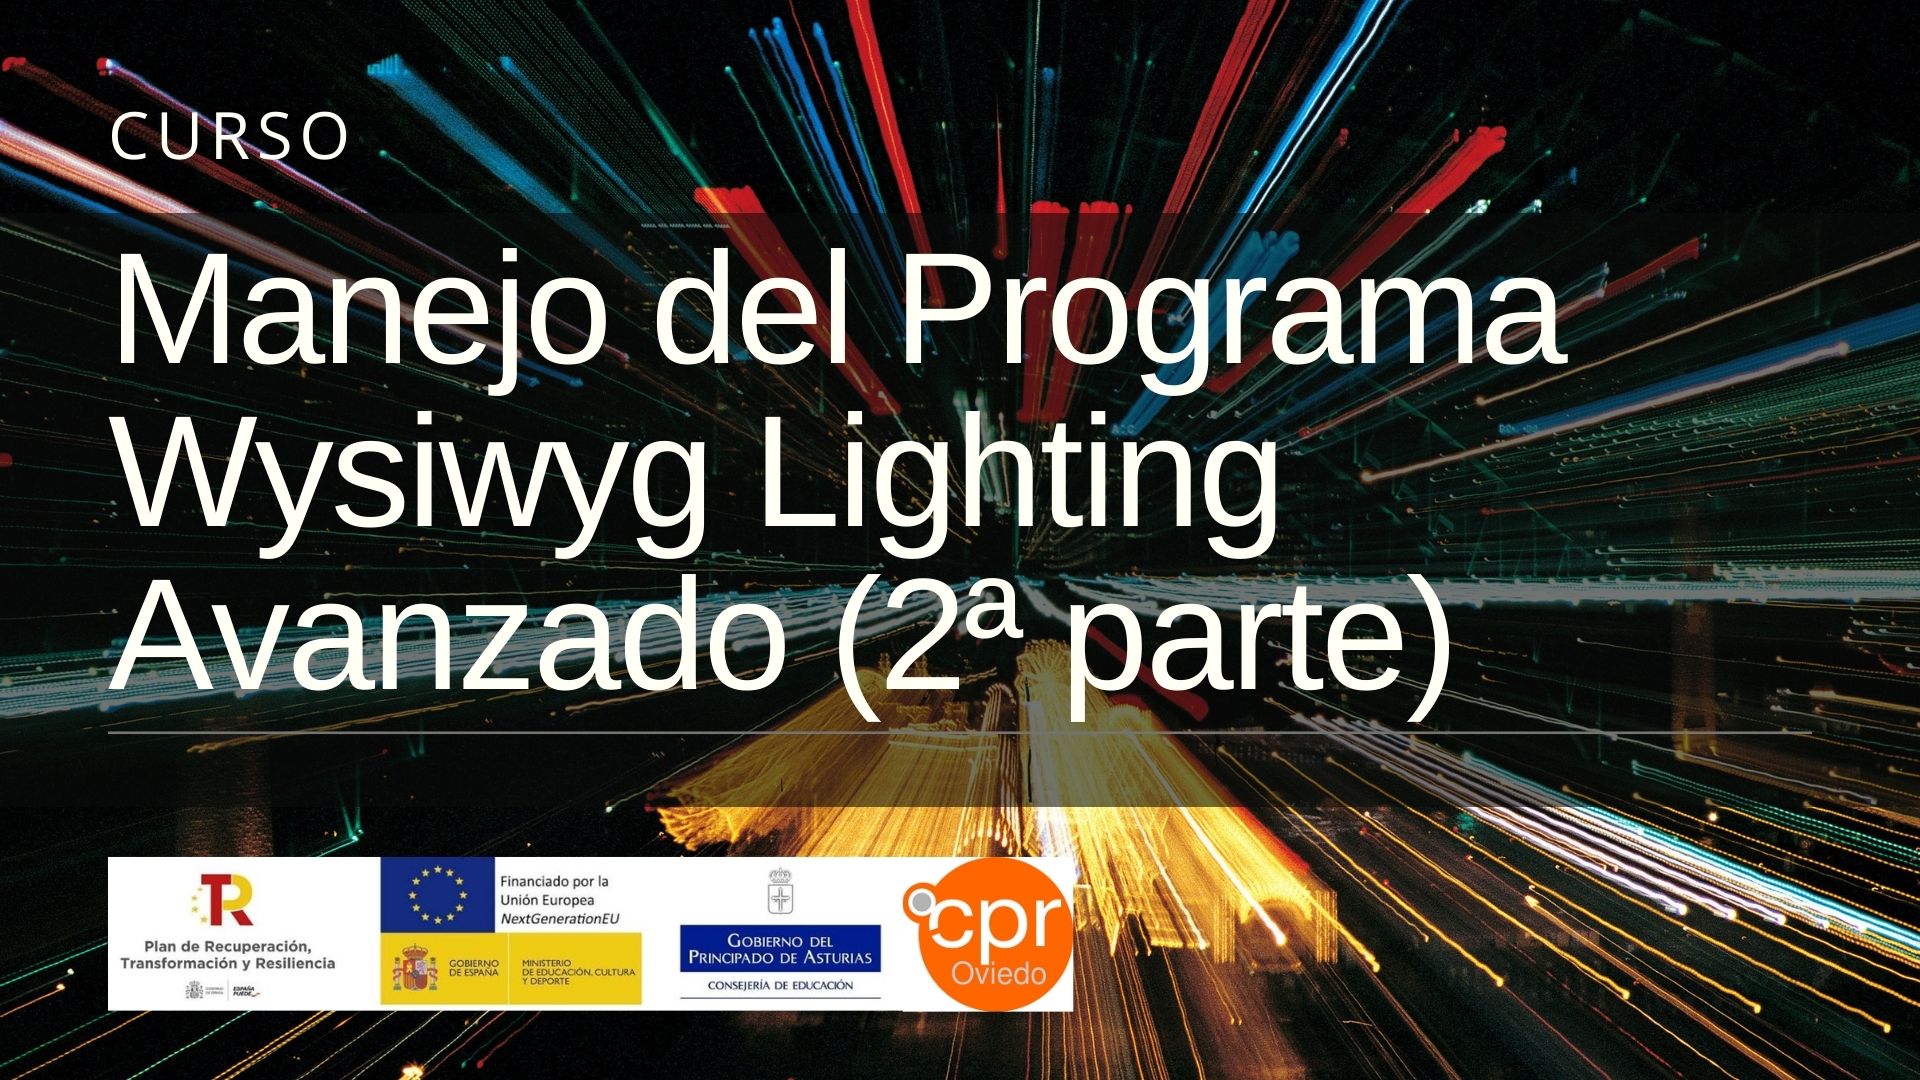 Listado de admisión – Curso “Manejo del Programa Wysiwyg Lighting Avanzado”